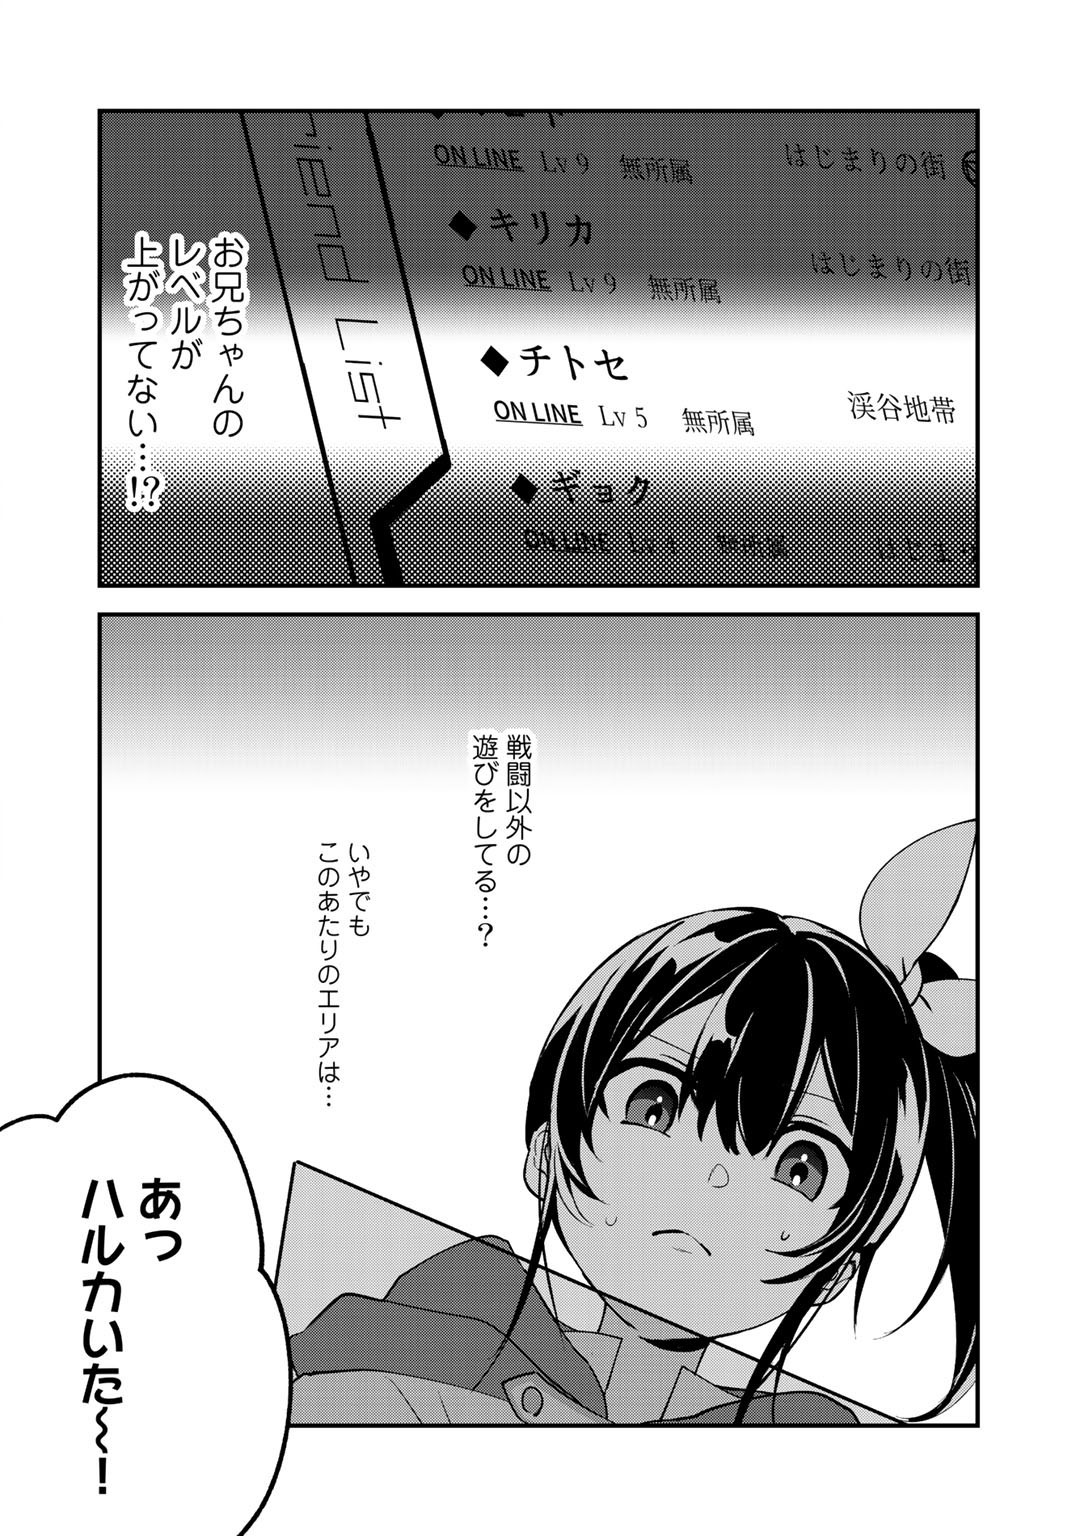 廃ゲーマーな妹と始めるVRMMO生活 第15.2話 - Page 2